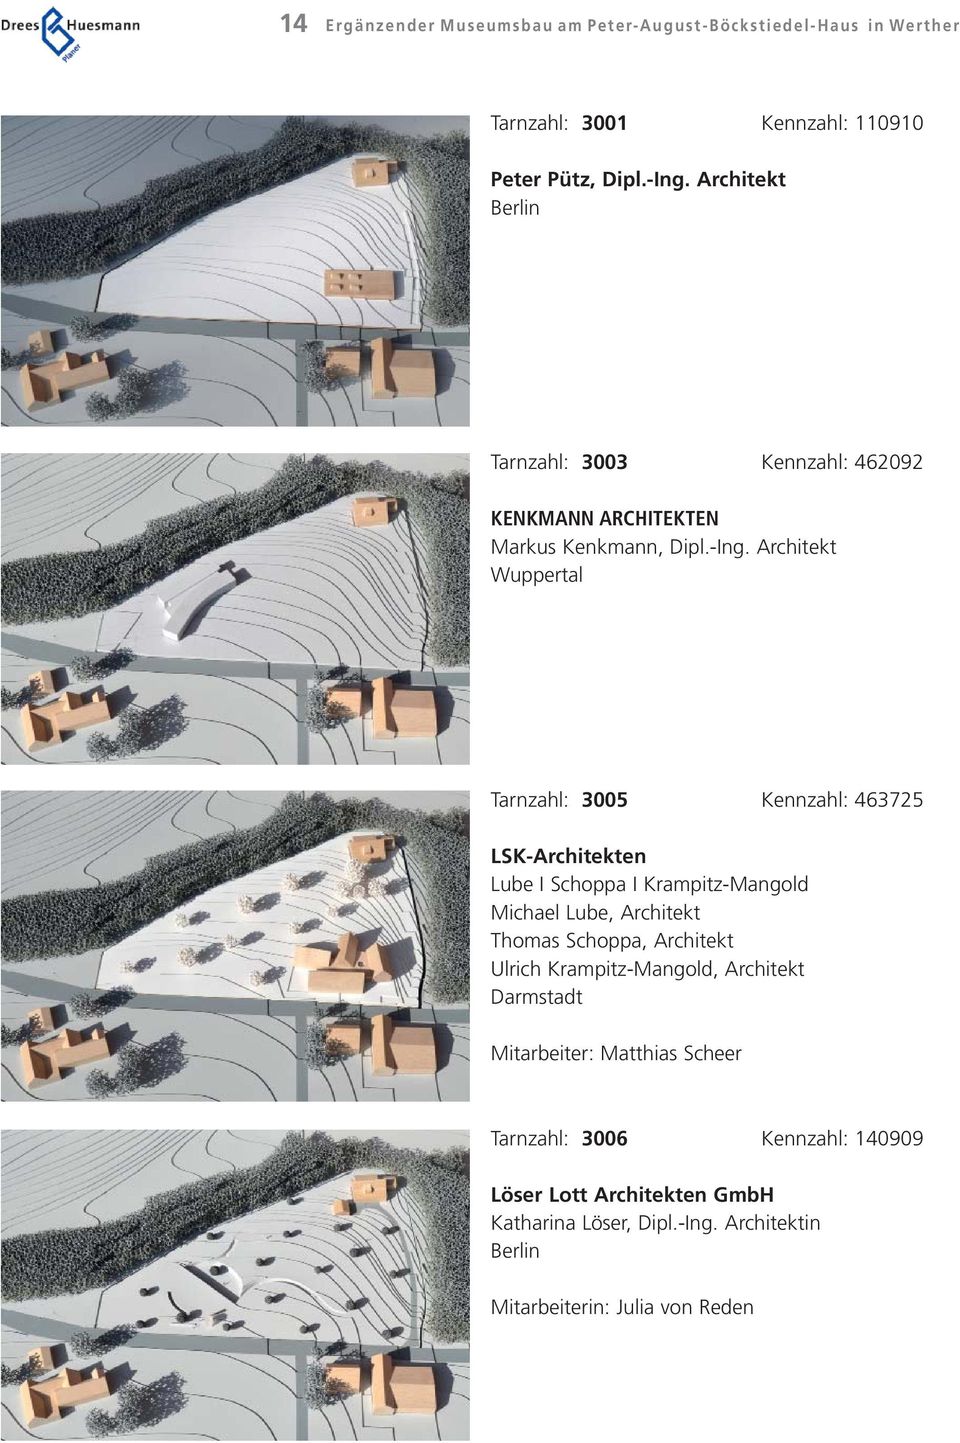 Architekt Wuppertal Tarnzahl: 3005 Kennzahl: 463725 LSK-Architekten Lube I Schoppa I Krampitz-Mangold Michael Lube, Architekt